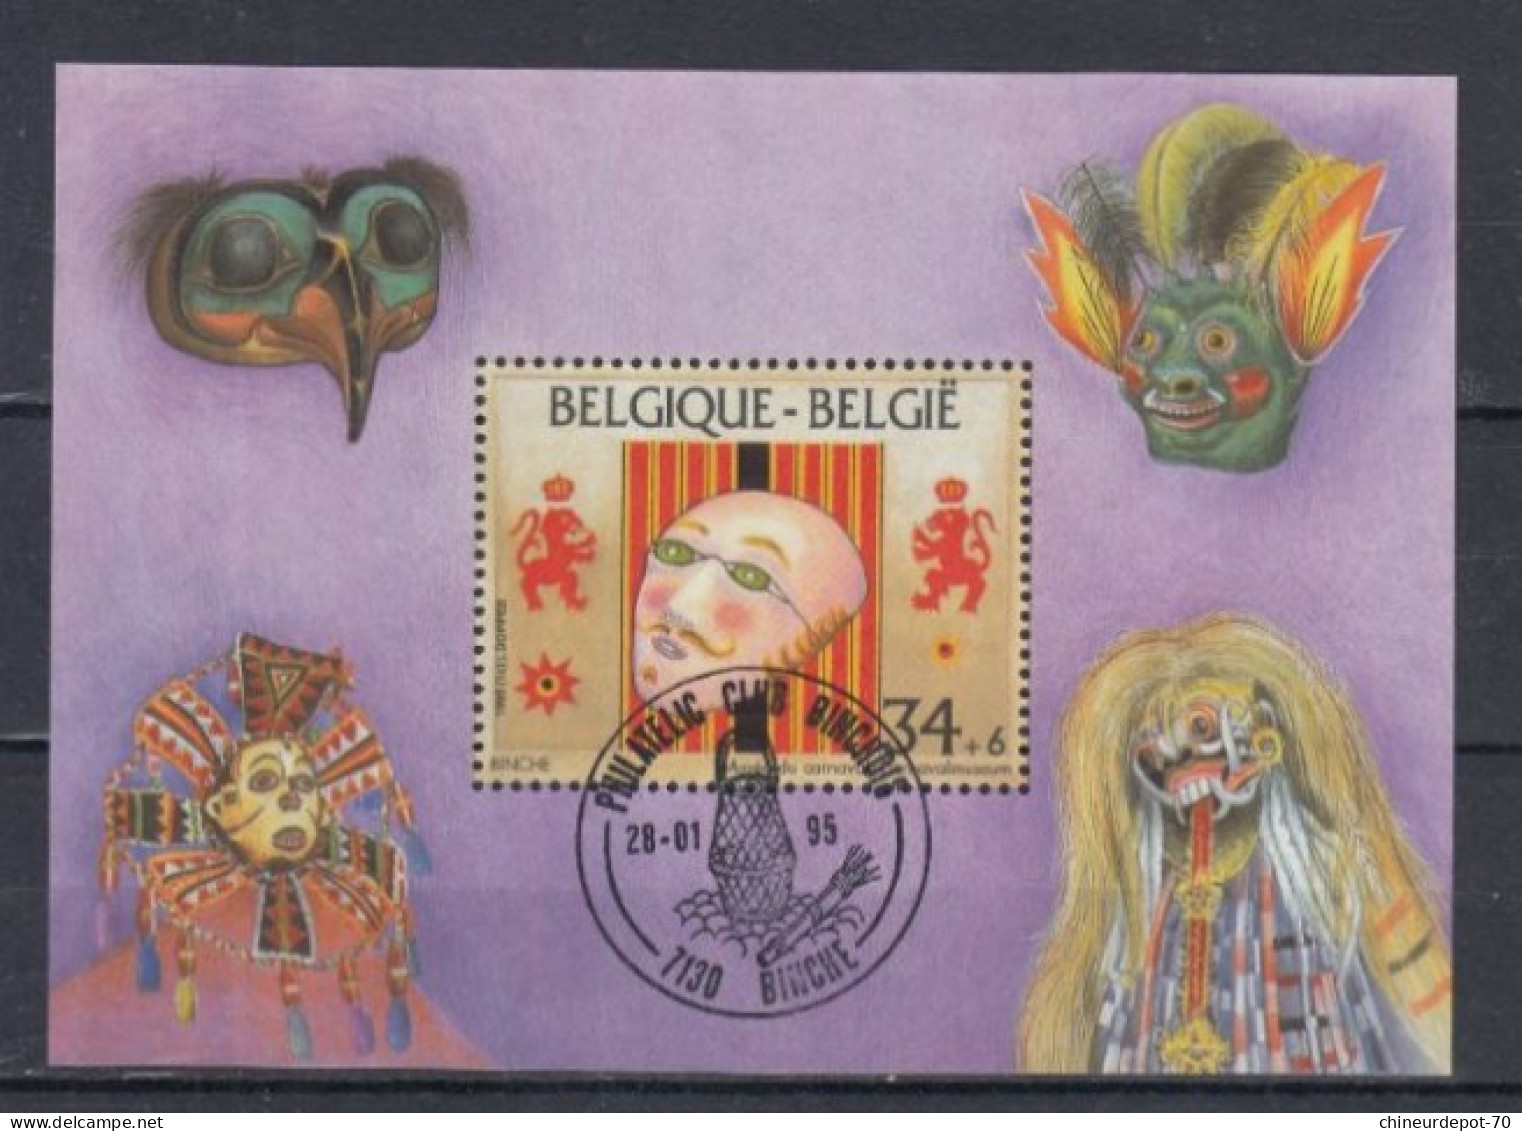 Belge BLOC MASQUE BINCHE 1995 - Usati